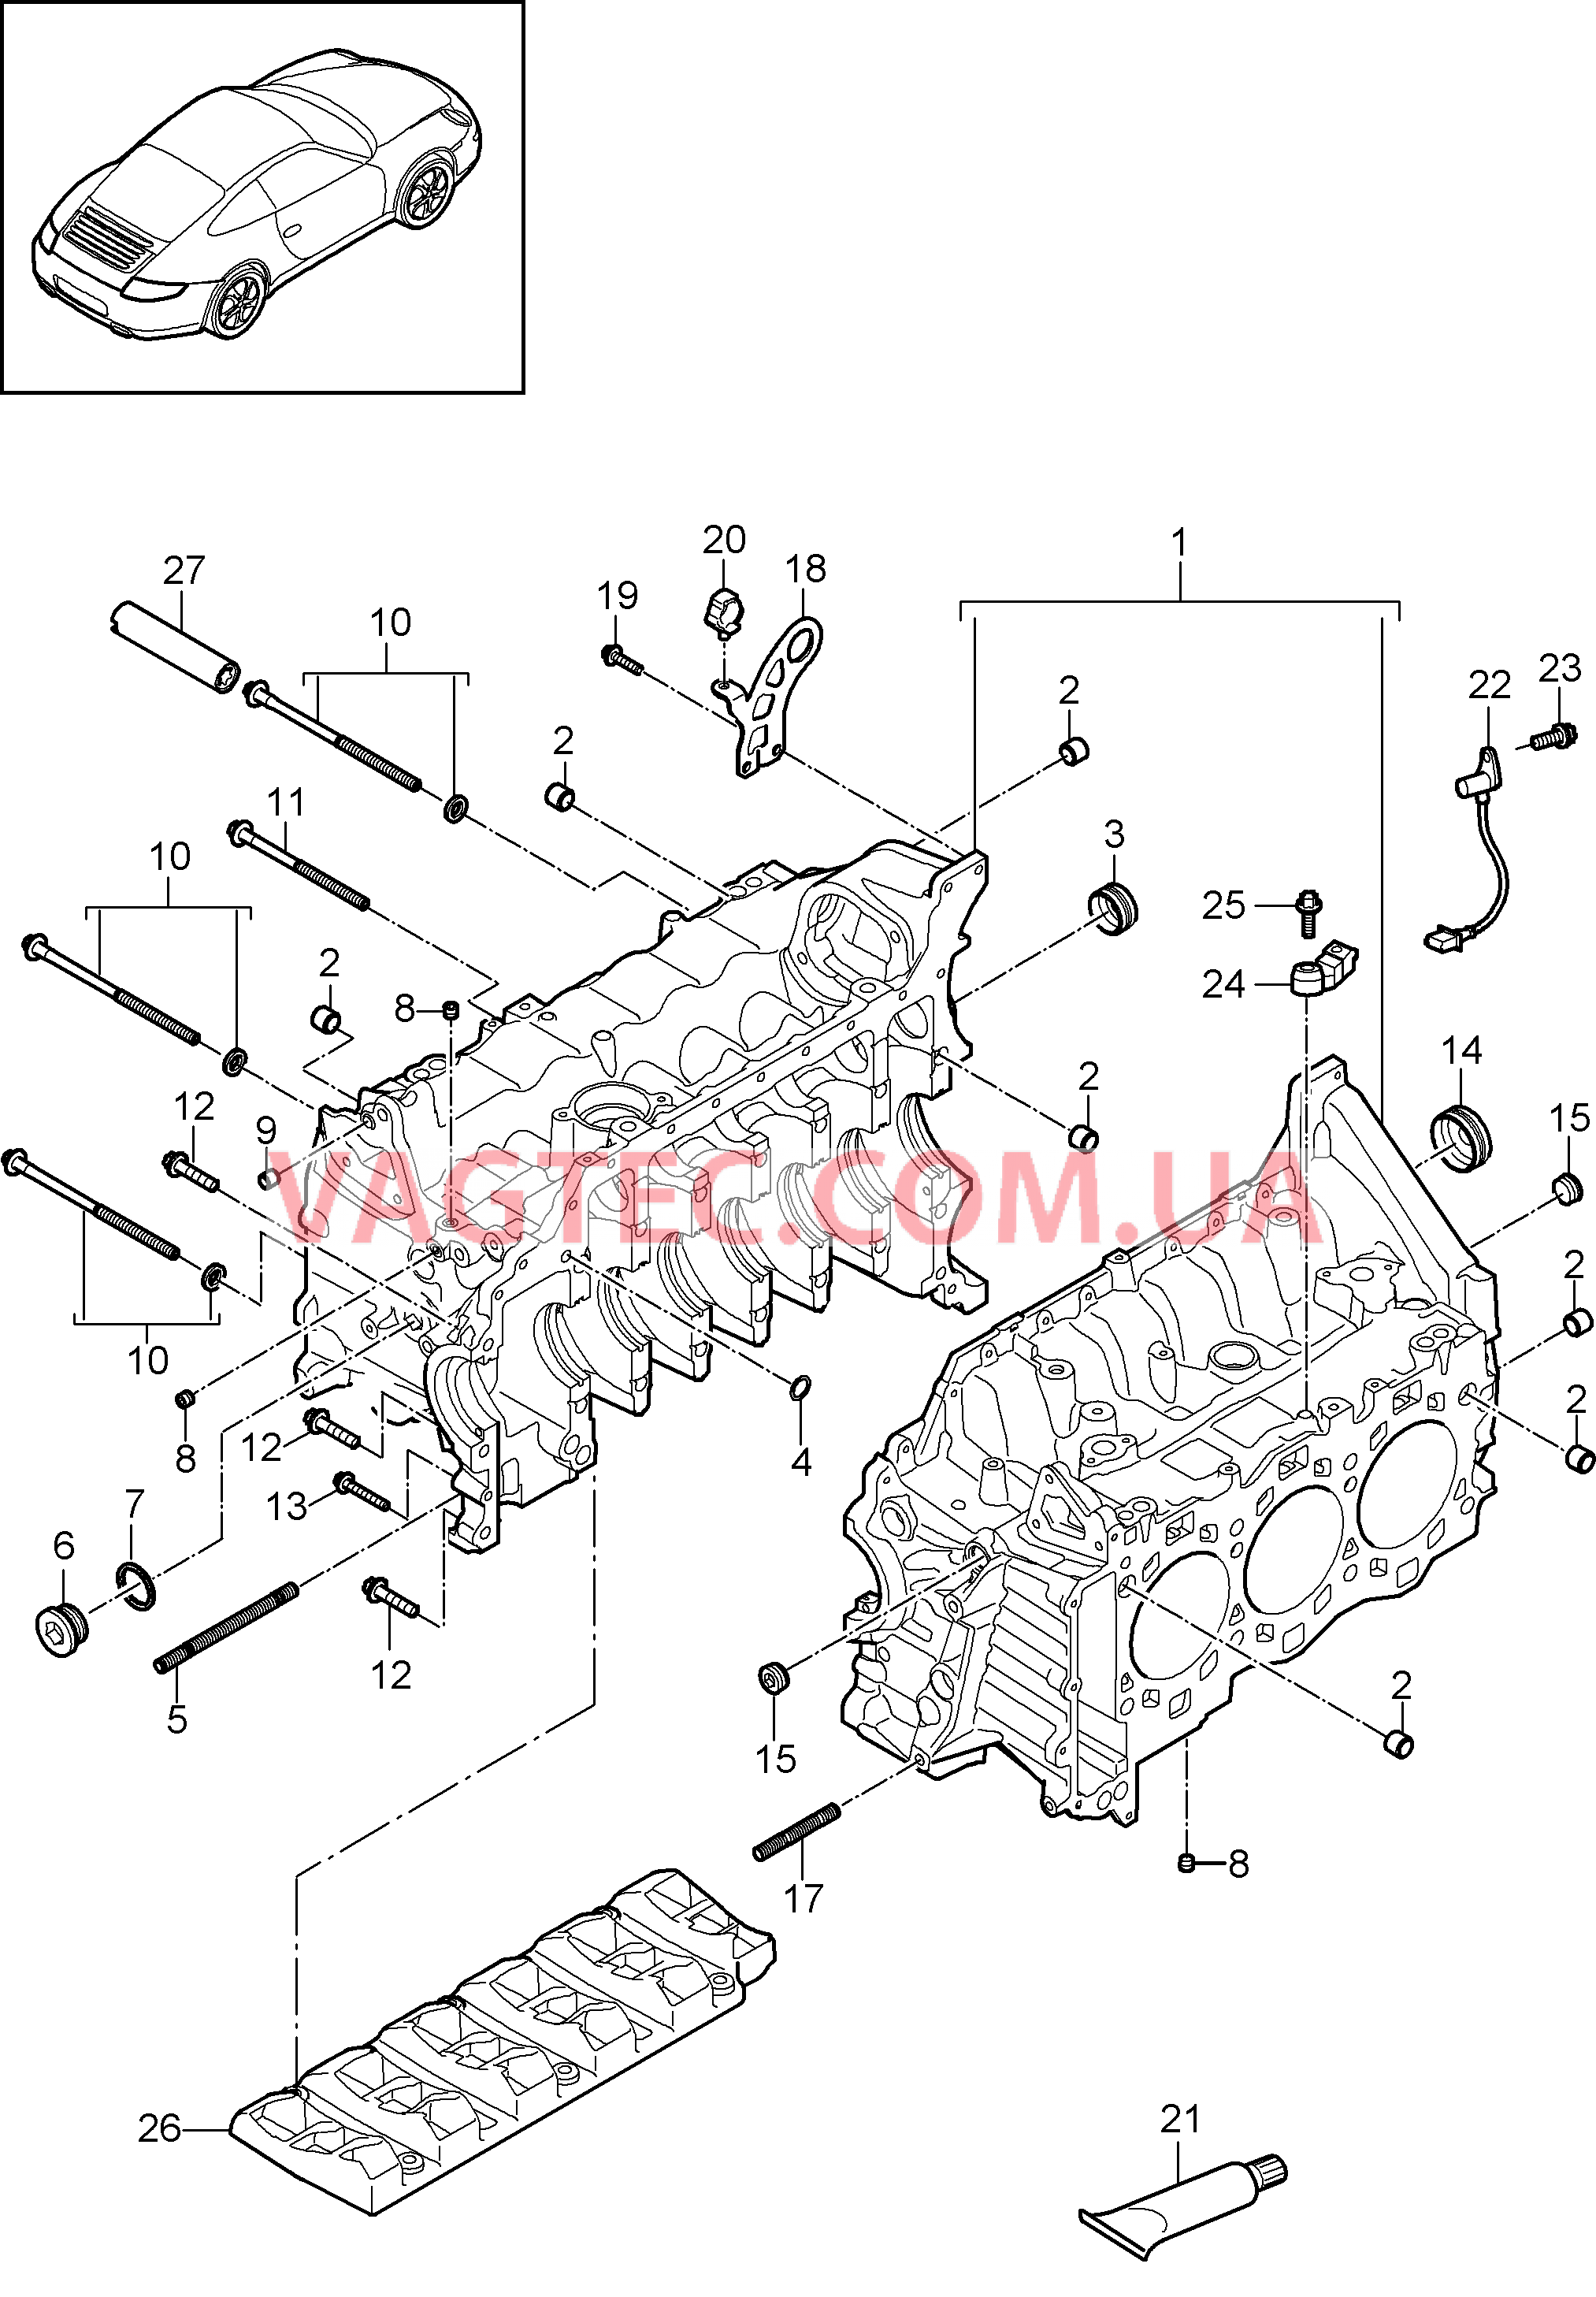 101-005 Кривошипный механизм
						
						MA1.01, MA1.02 для PORSCHE 911.Carrera 2009-2012